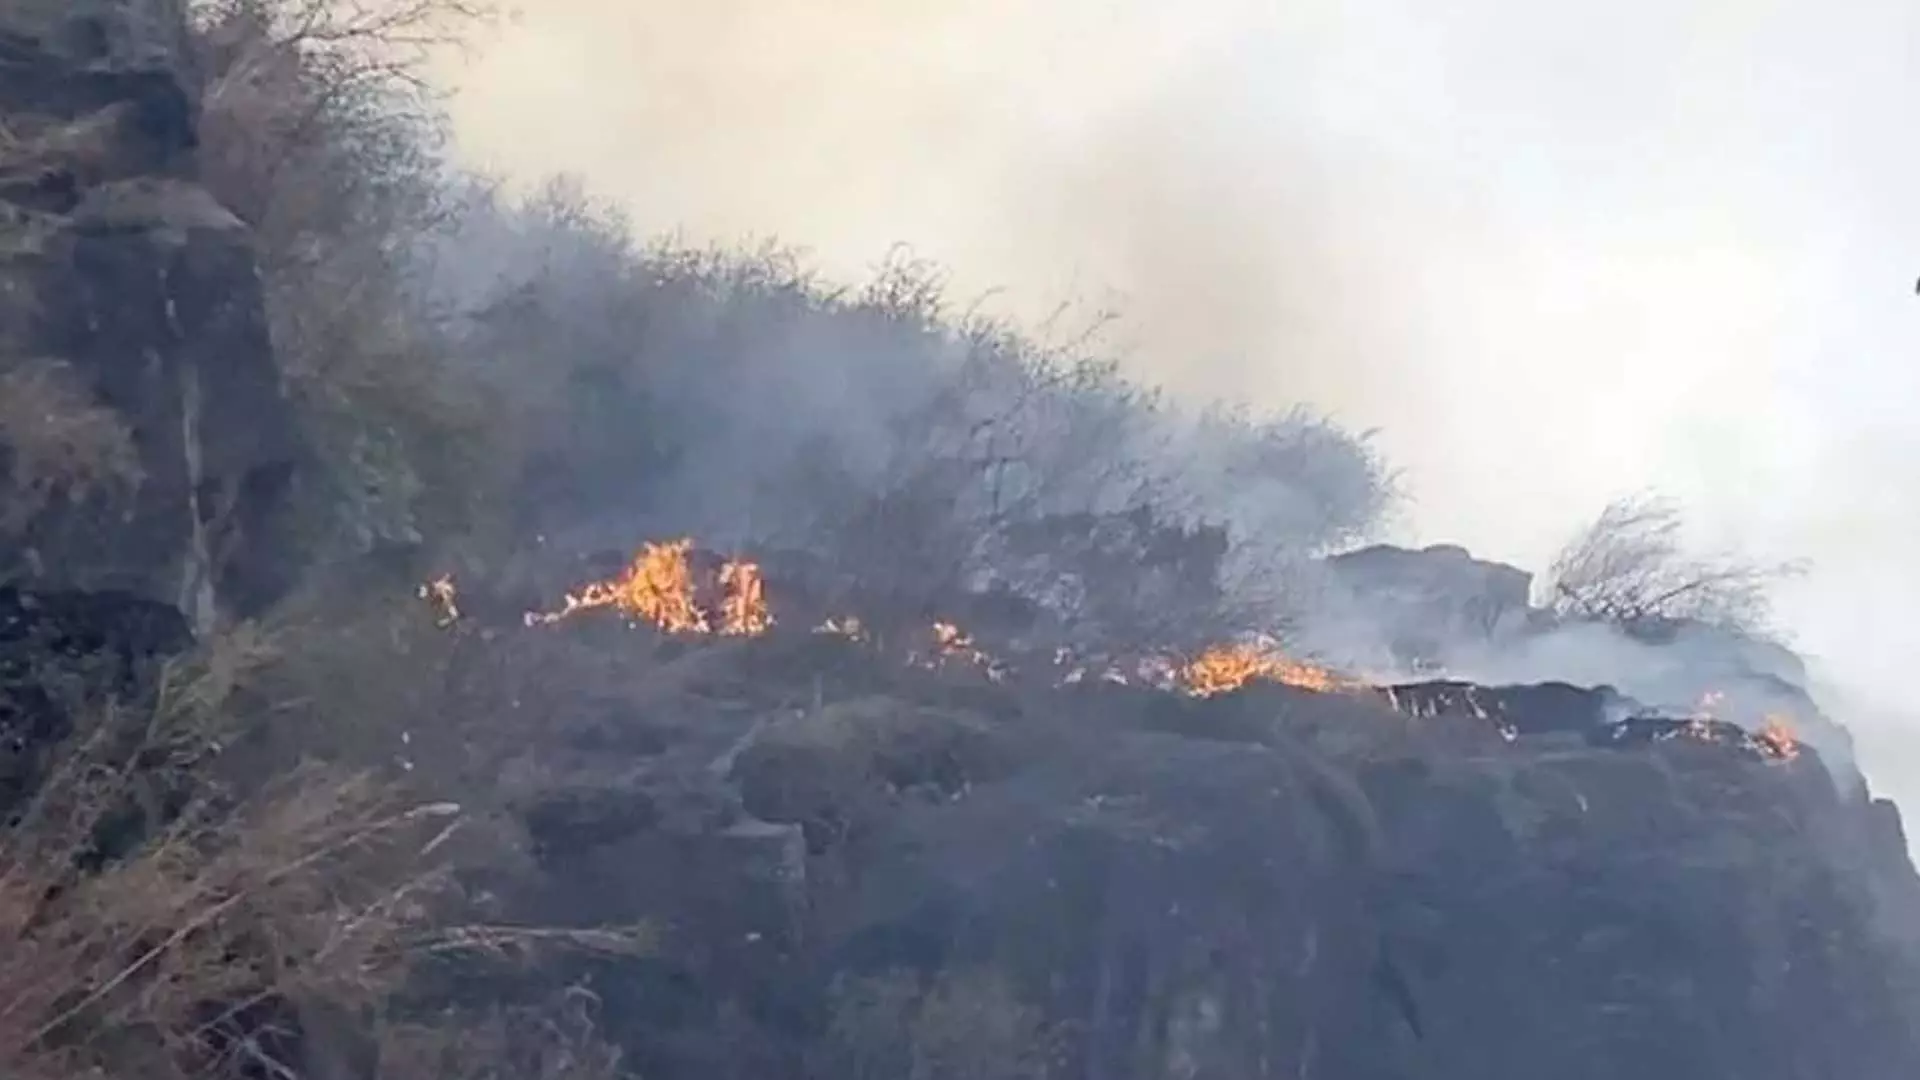 वन विभाग ने गंदेरबल में जंगल की आग के खिलाफ सलाह जारी की